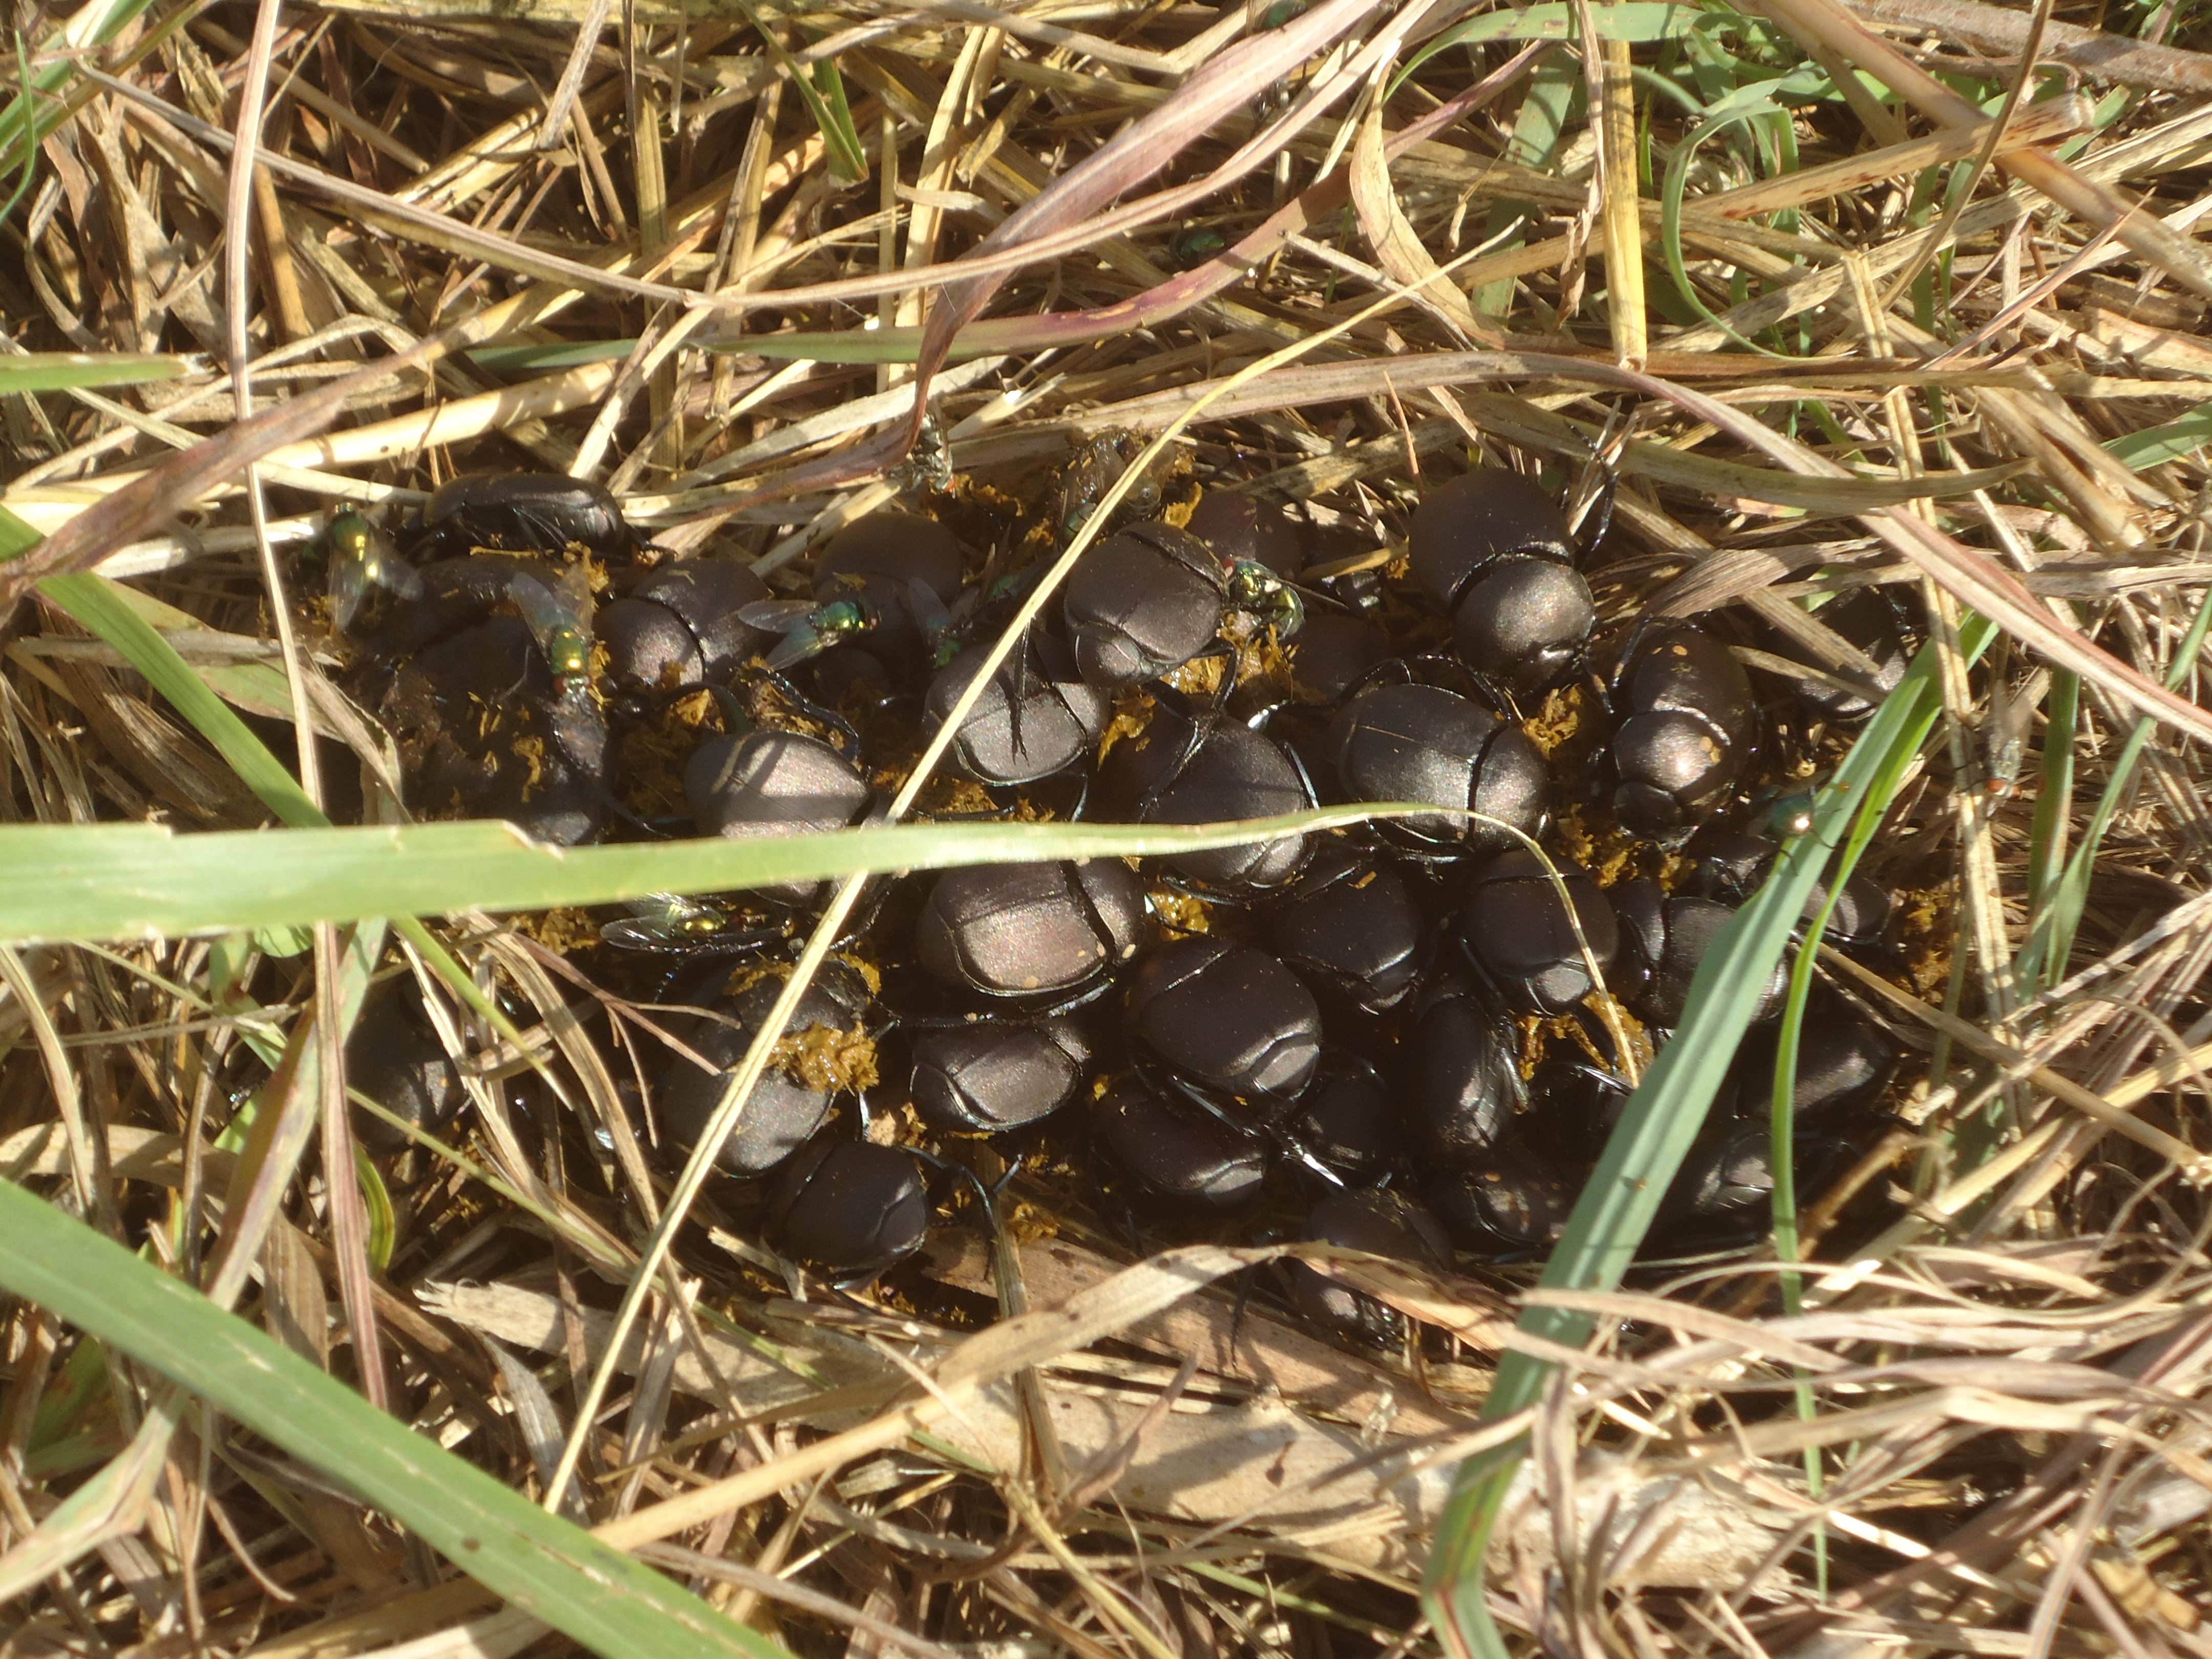 regen sol Morrison - dung beetles